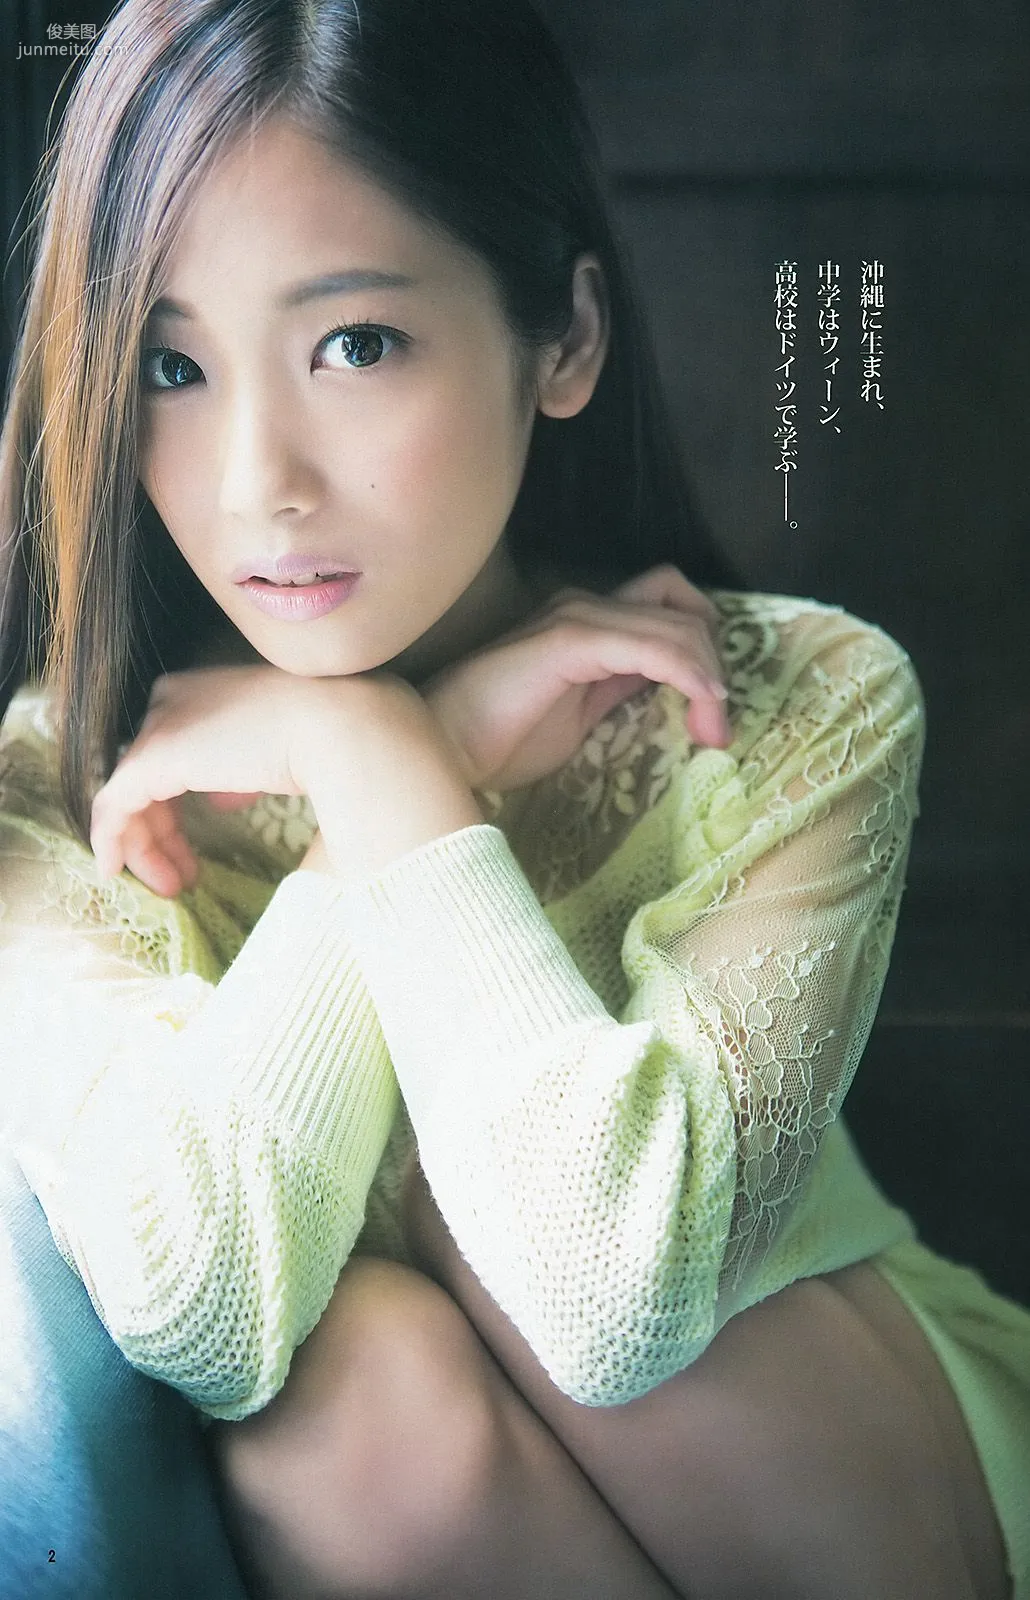 佐々木希 二宮芽生 仙石みなみ [Weekly Young Jump] 2013年No.40 写真杂志10